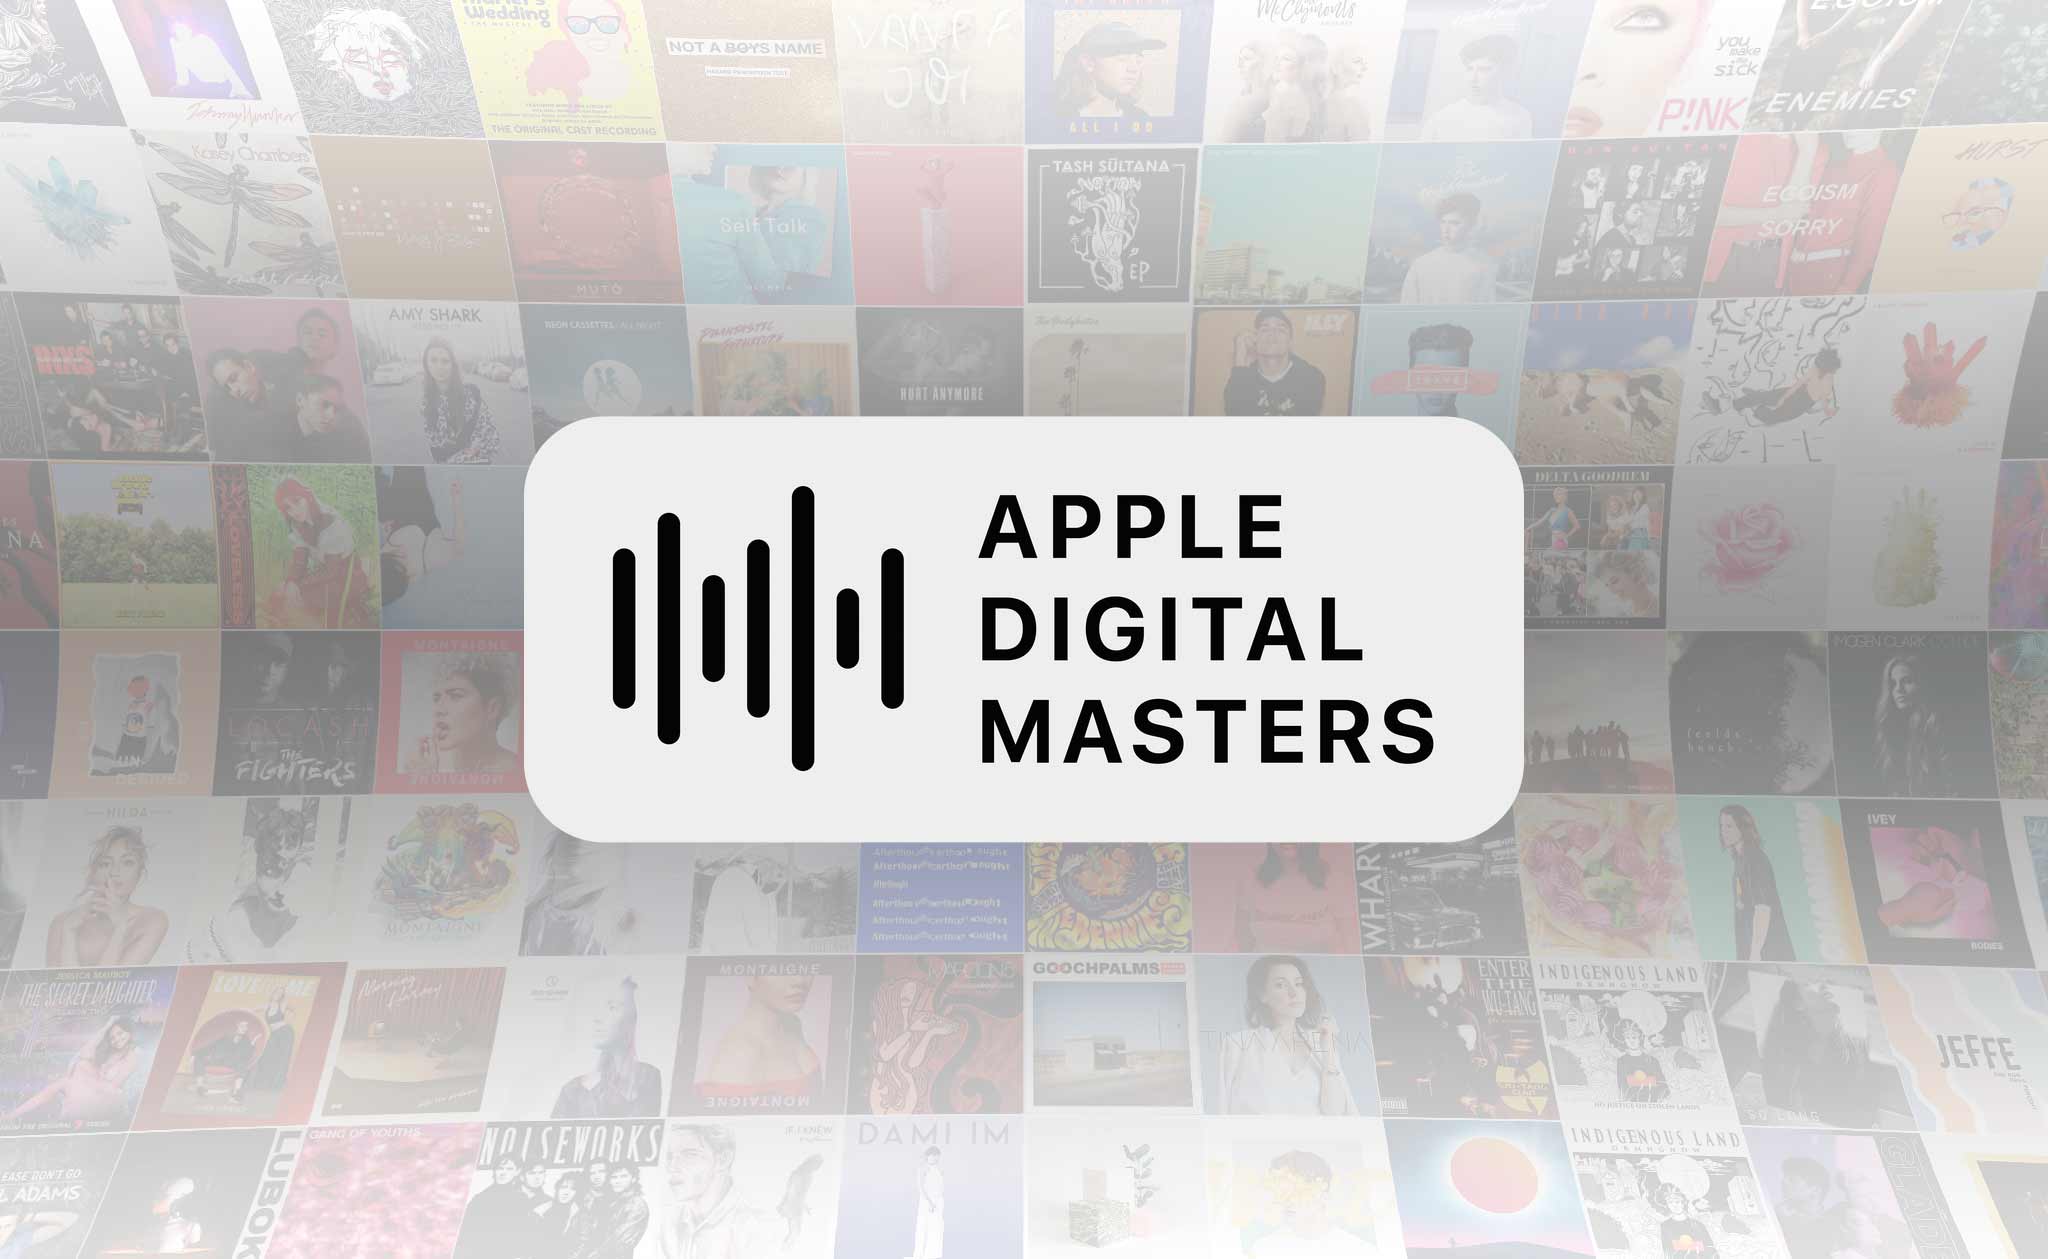 Apple Digital Masters